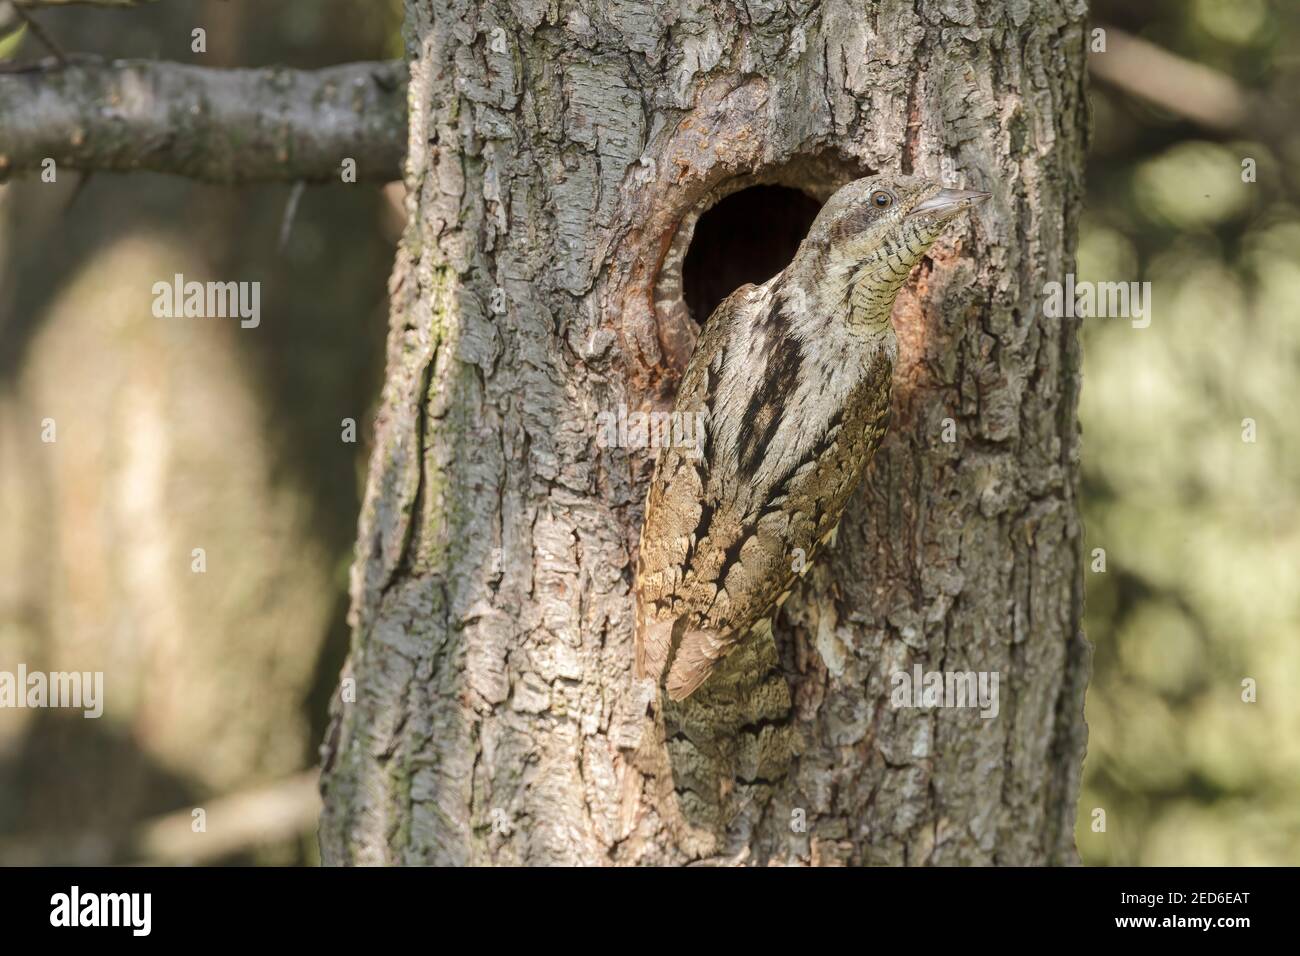 Eurasischer Wryneck, Jynx torquilla, erwachsen am Nest in einem Baum, Gabarevo, Bulgarien, 12. Juni 2012 Stockfoto